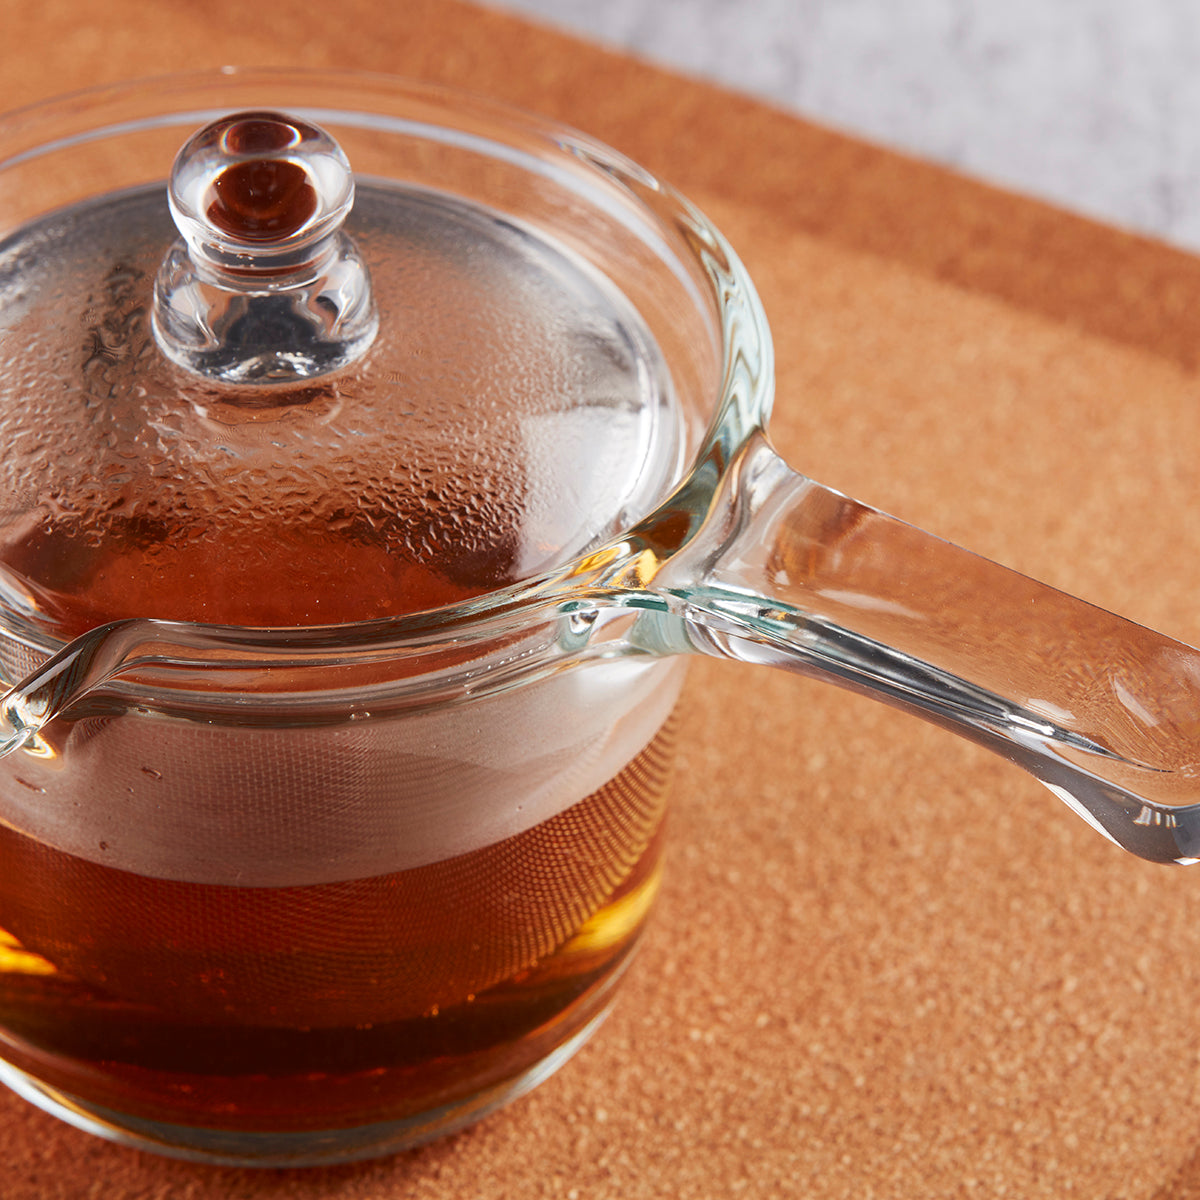 【家居】耐熱玻璃日式單柄茶壺